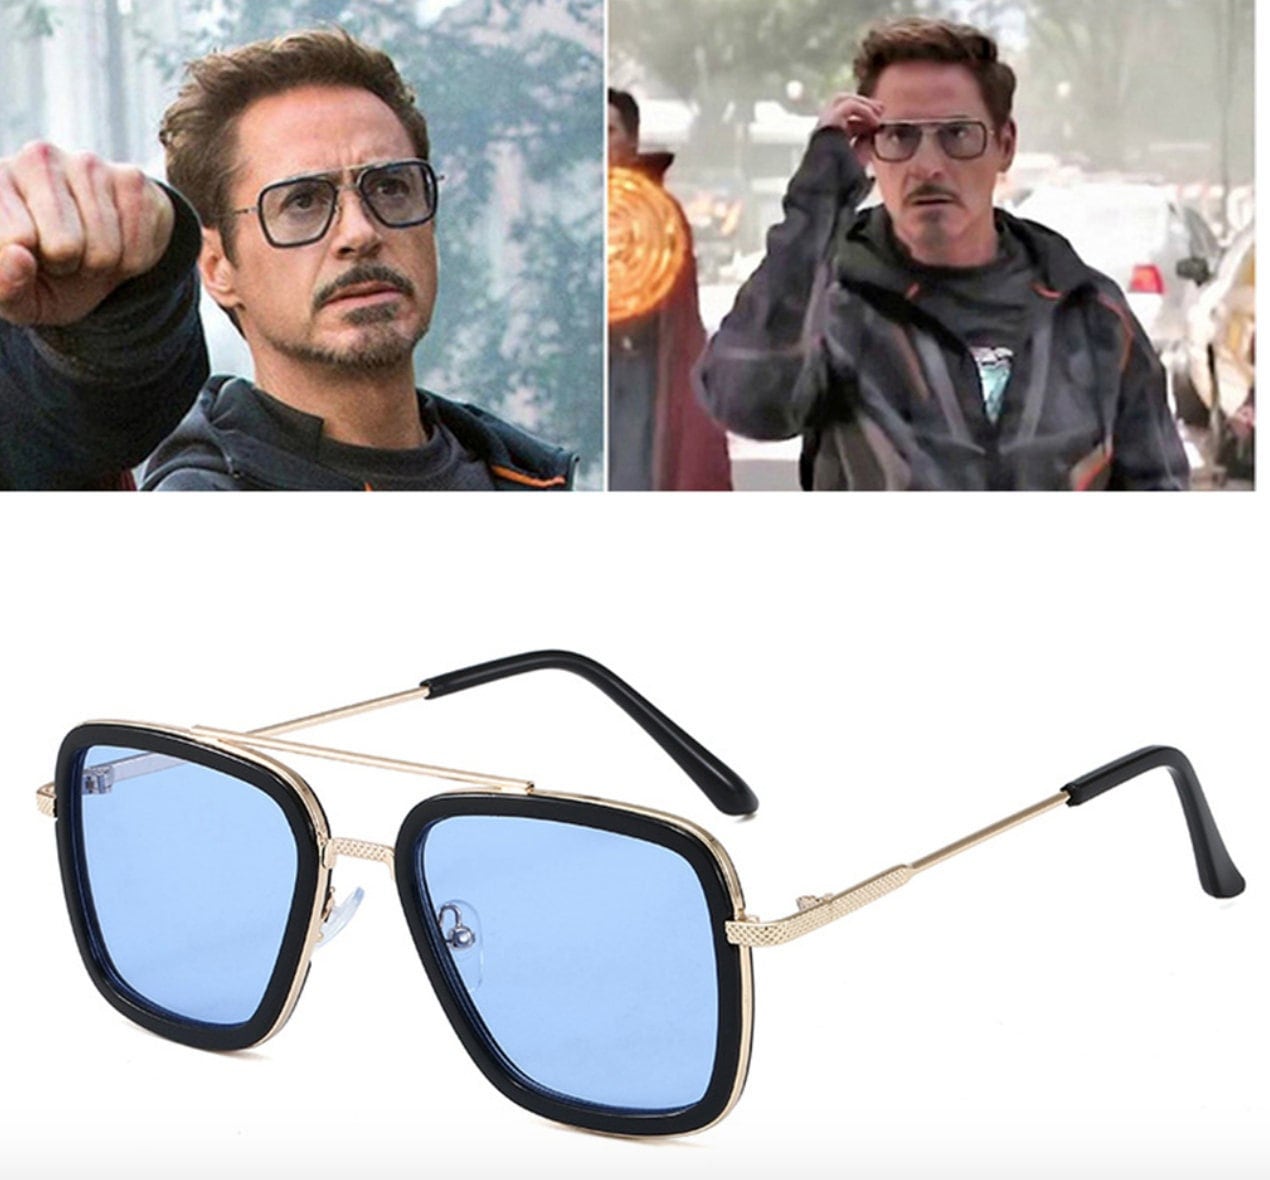 Iron man eyewear -